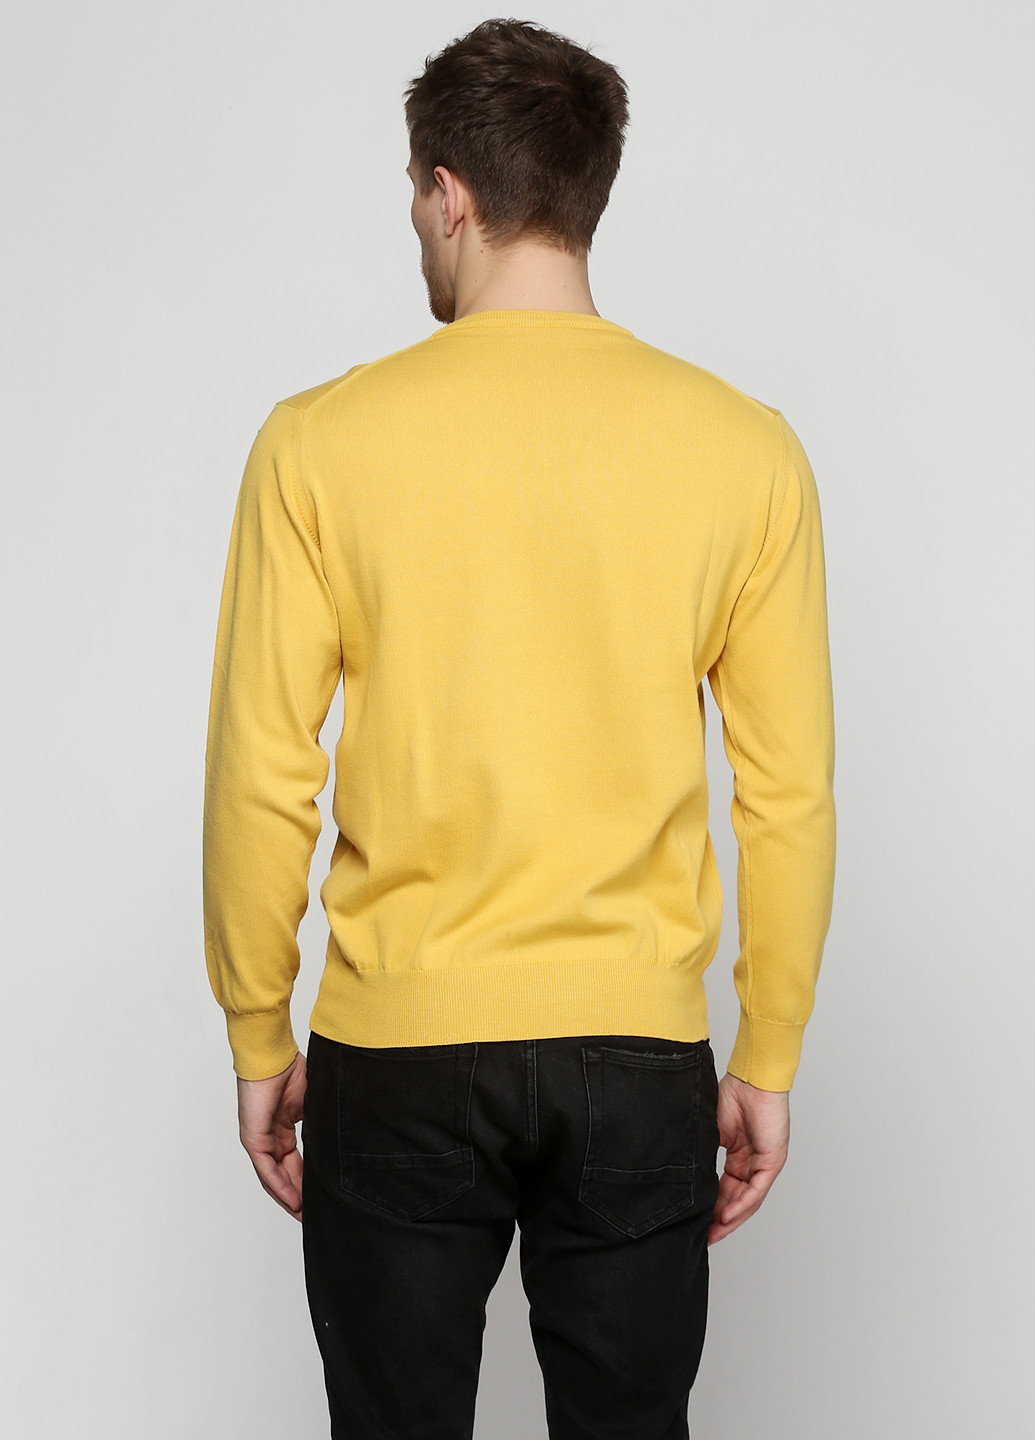 Желтый демисезонный пуловер пуловер Barbieri